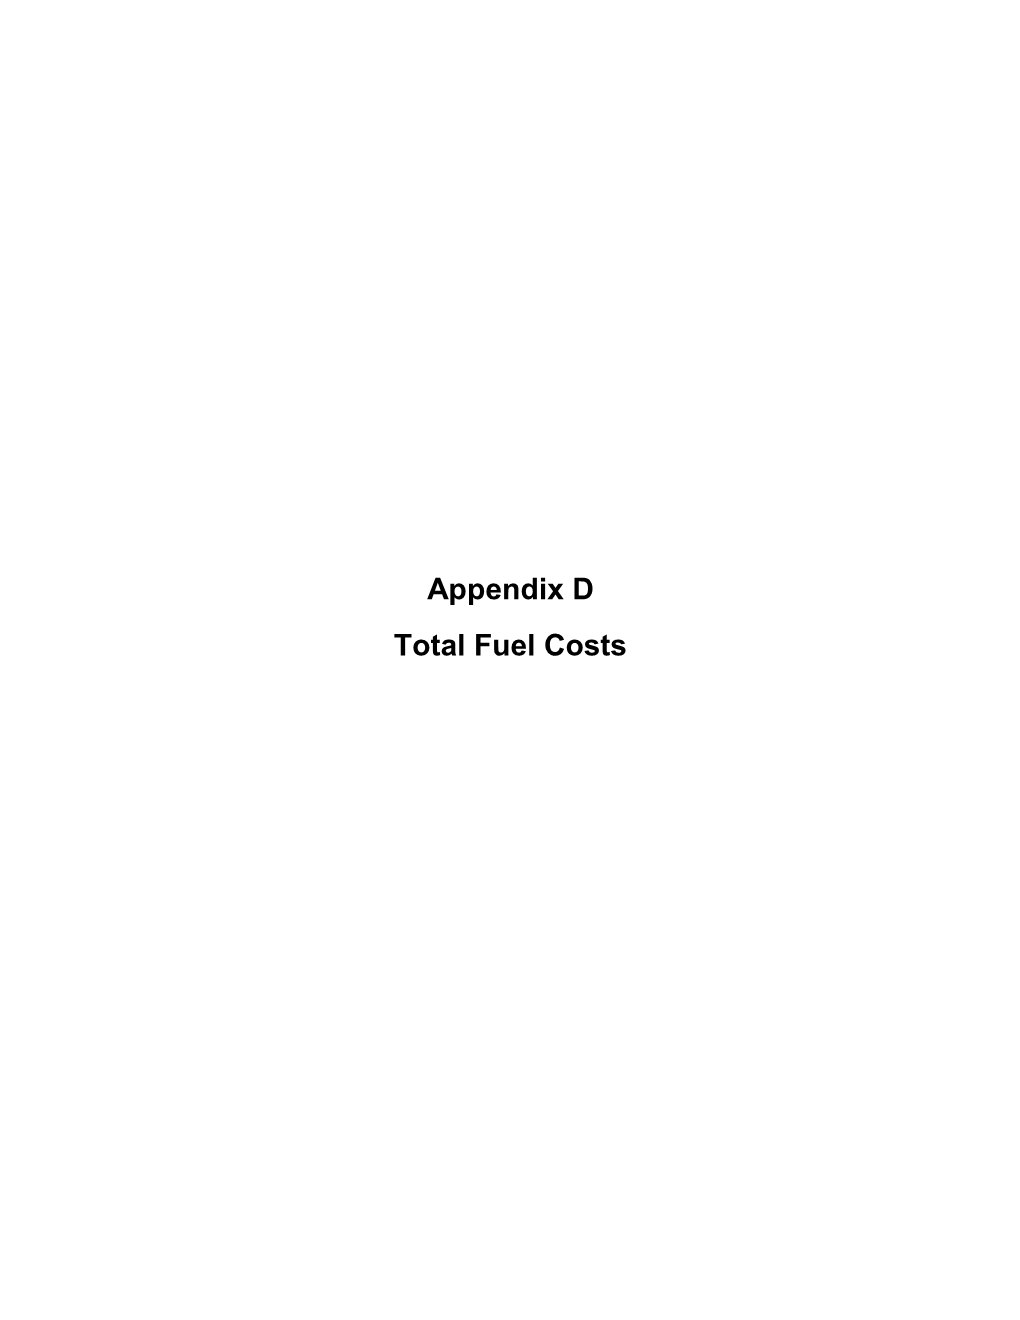 Appendix D Total Fuel Costs